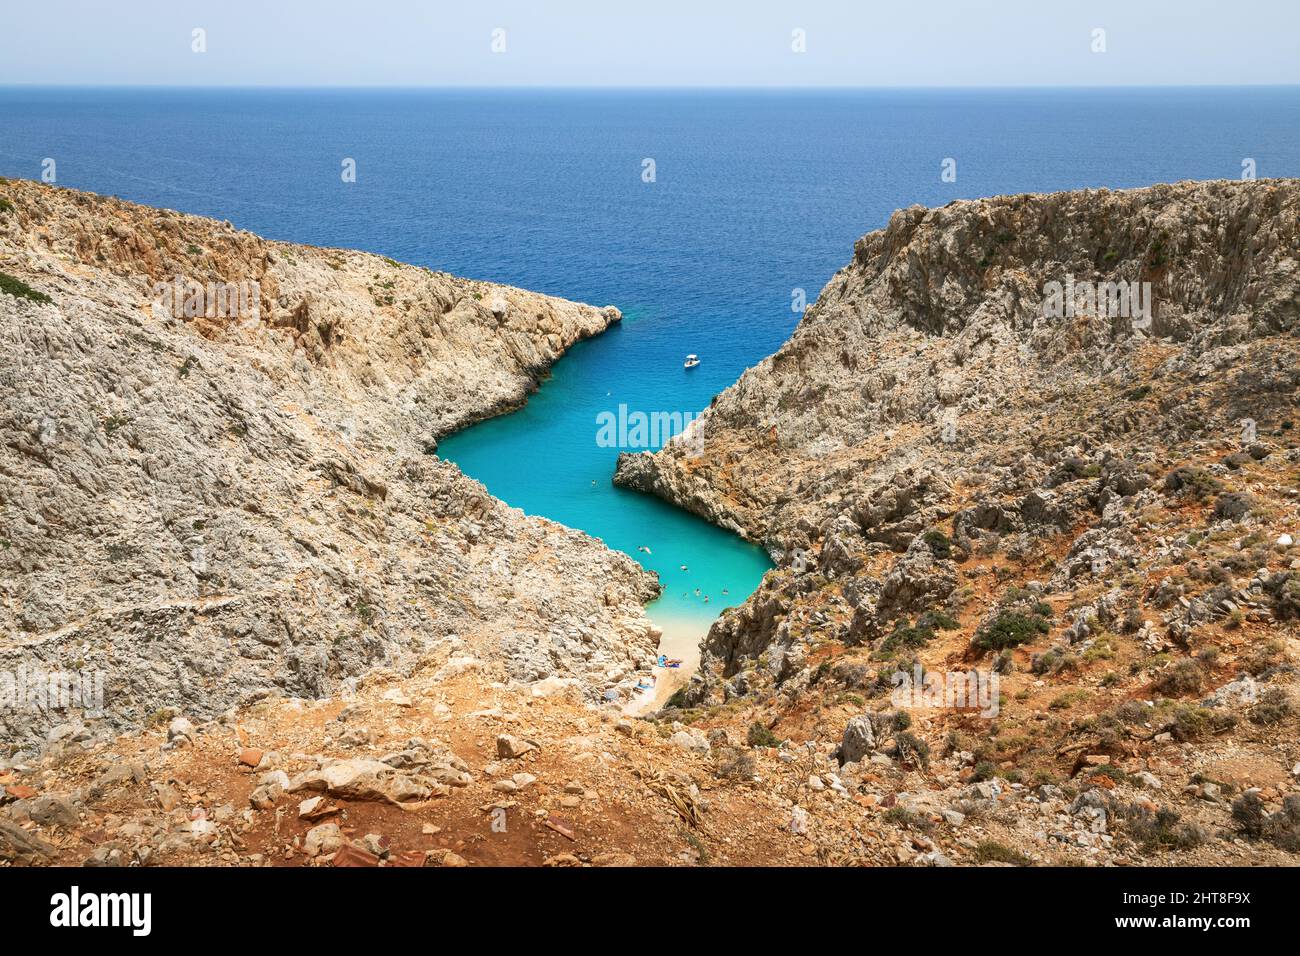 Vue sur les touristes appréciant leur journée sur la plage de Seitan Limani, Crète, Grèce Banque D'Images